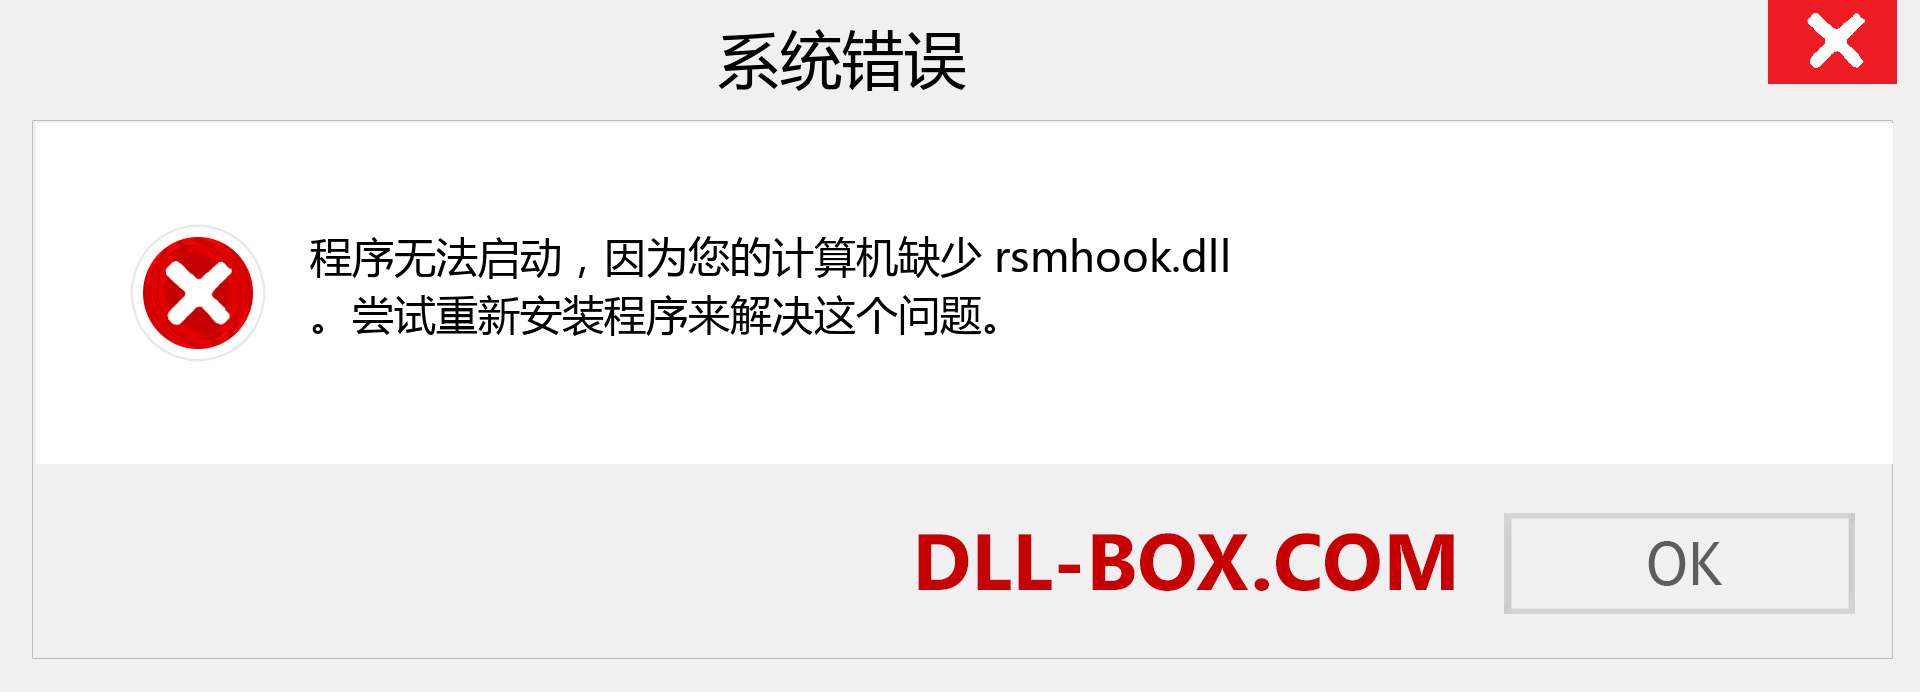 rsmhook.dll 文件丢失？。 适用于 Windows 7、8、10 的下载 - 修复 Windows、照片、图像上的 rsmhook dll 丢失错误